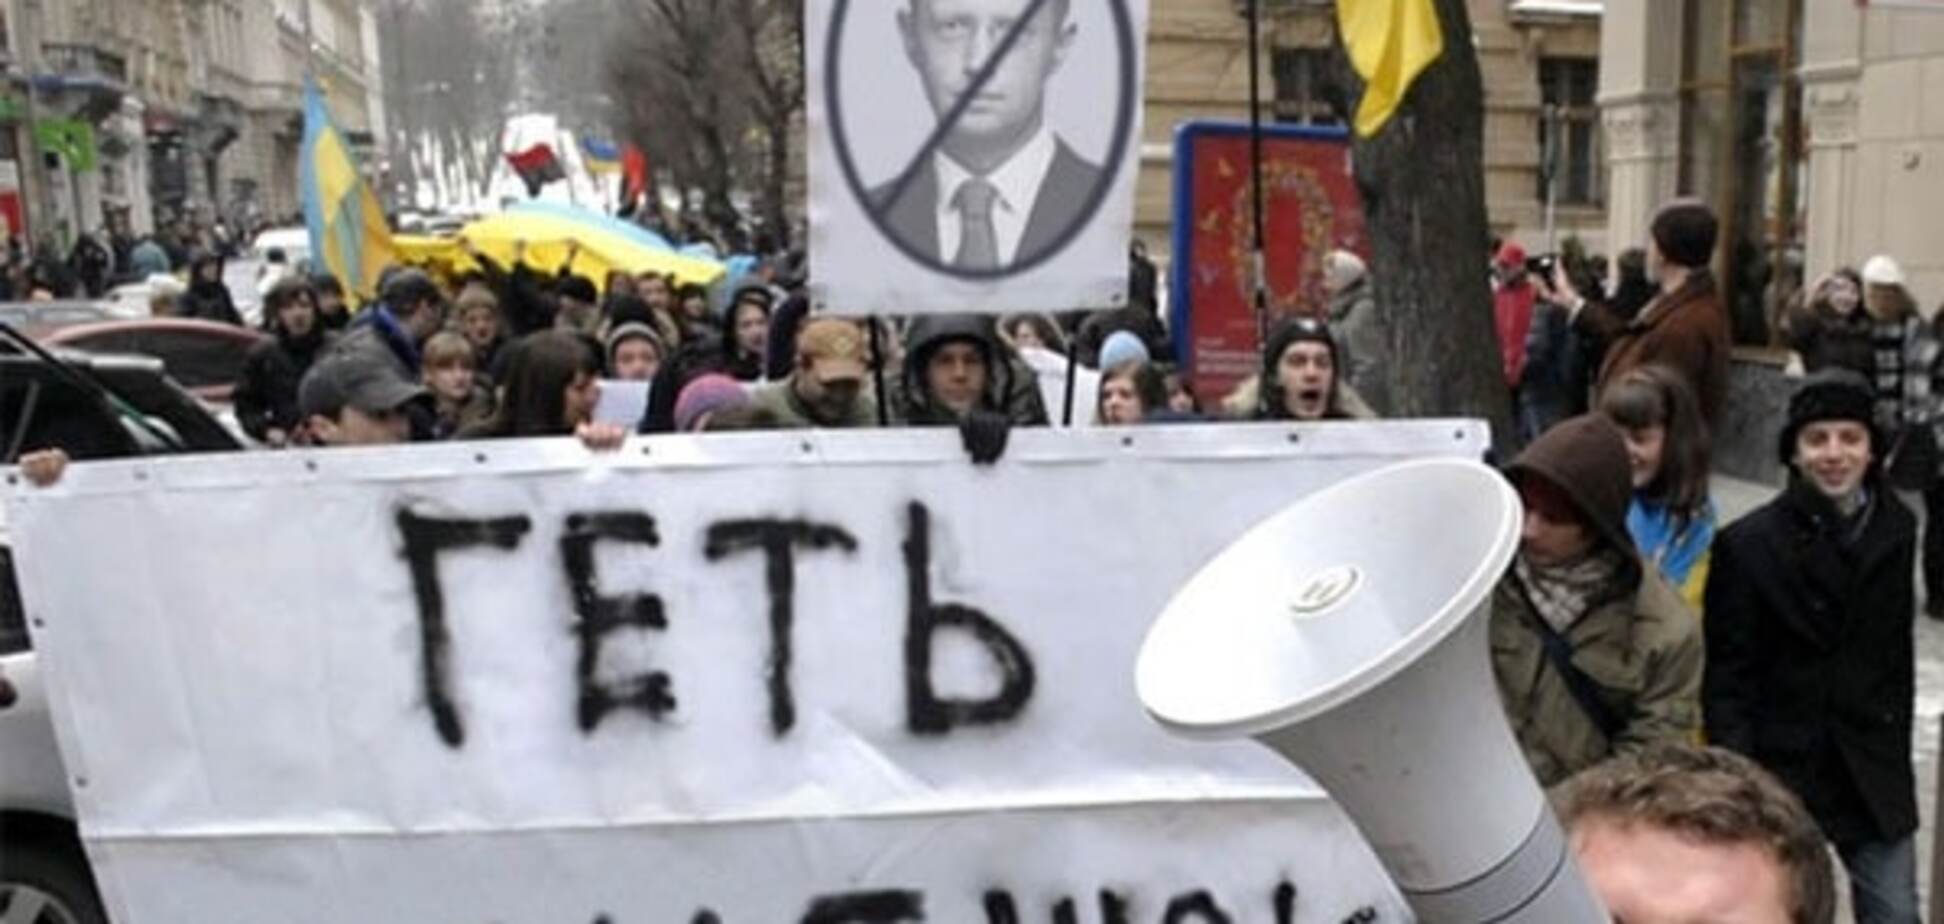 Отставка Яценюка: Тимошенко готовит проплаченную 'акцию протеста' - Геращенко